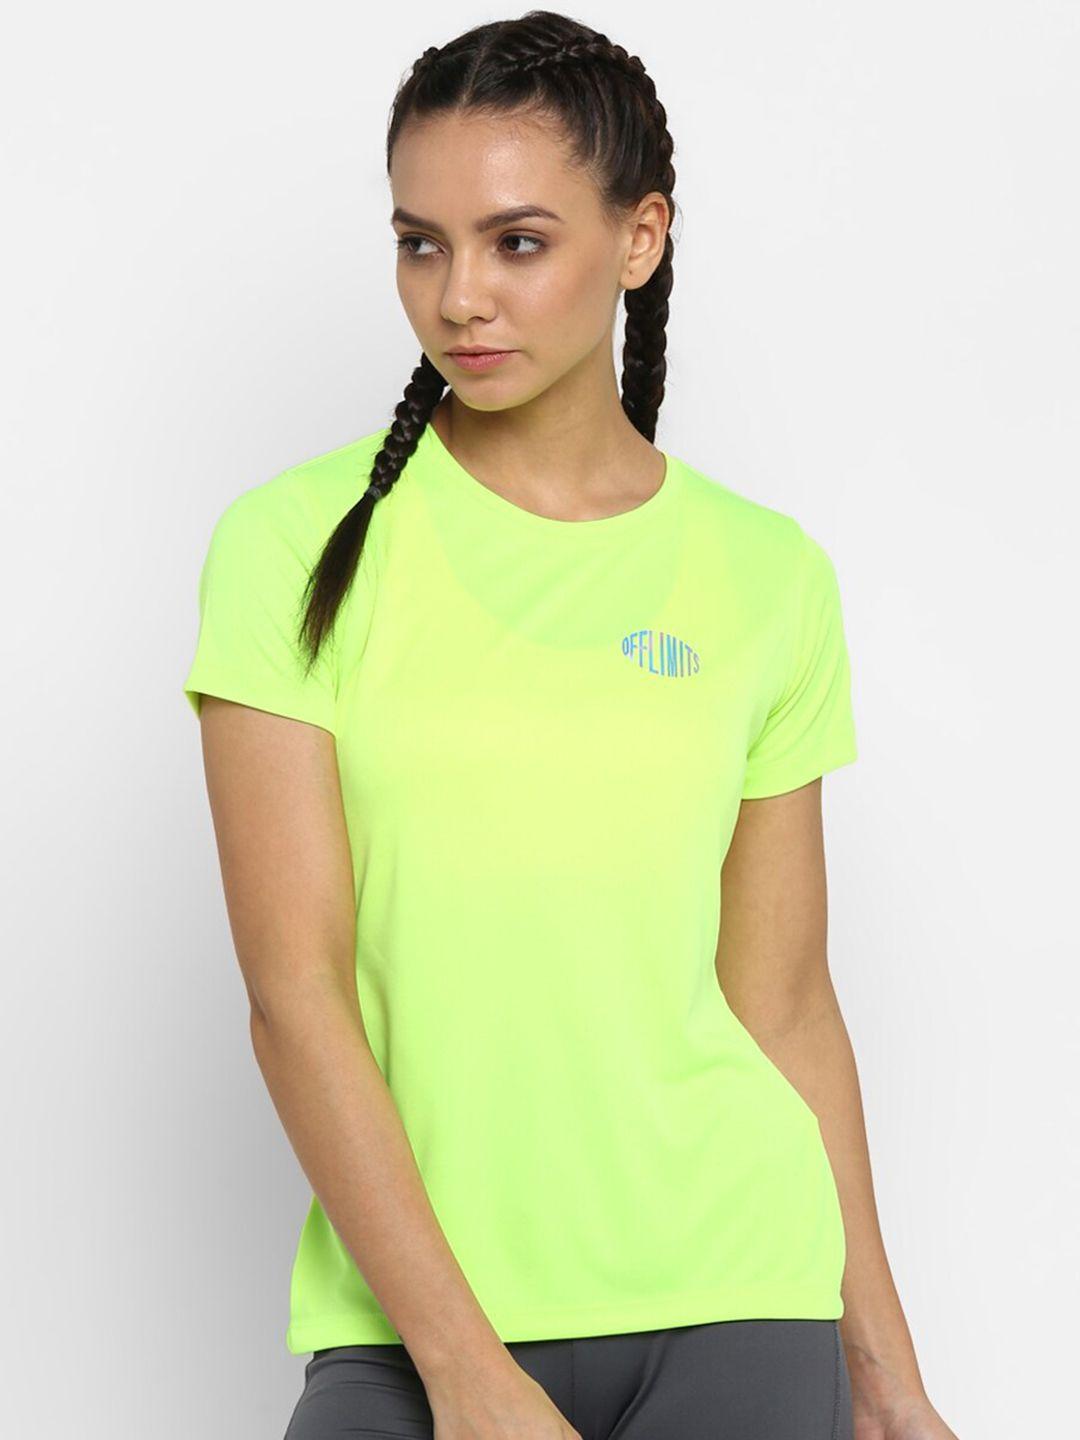 off-limits-women-fluorescent-green-brand-logo-t-shirt